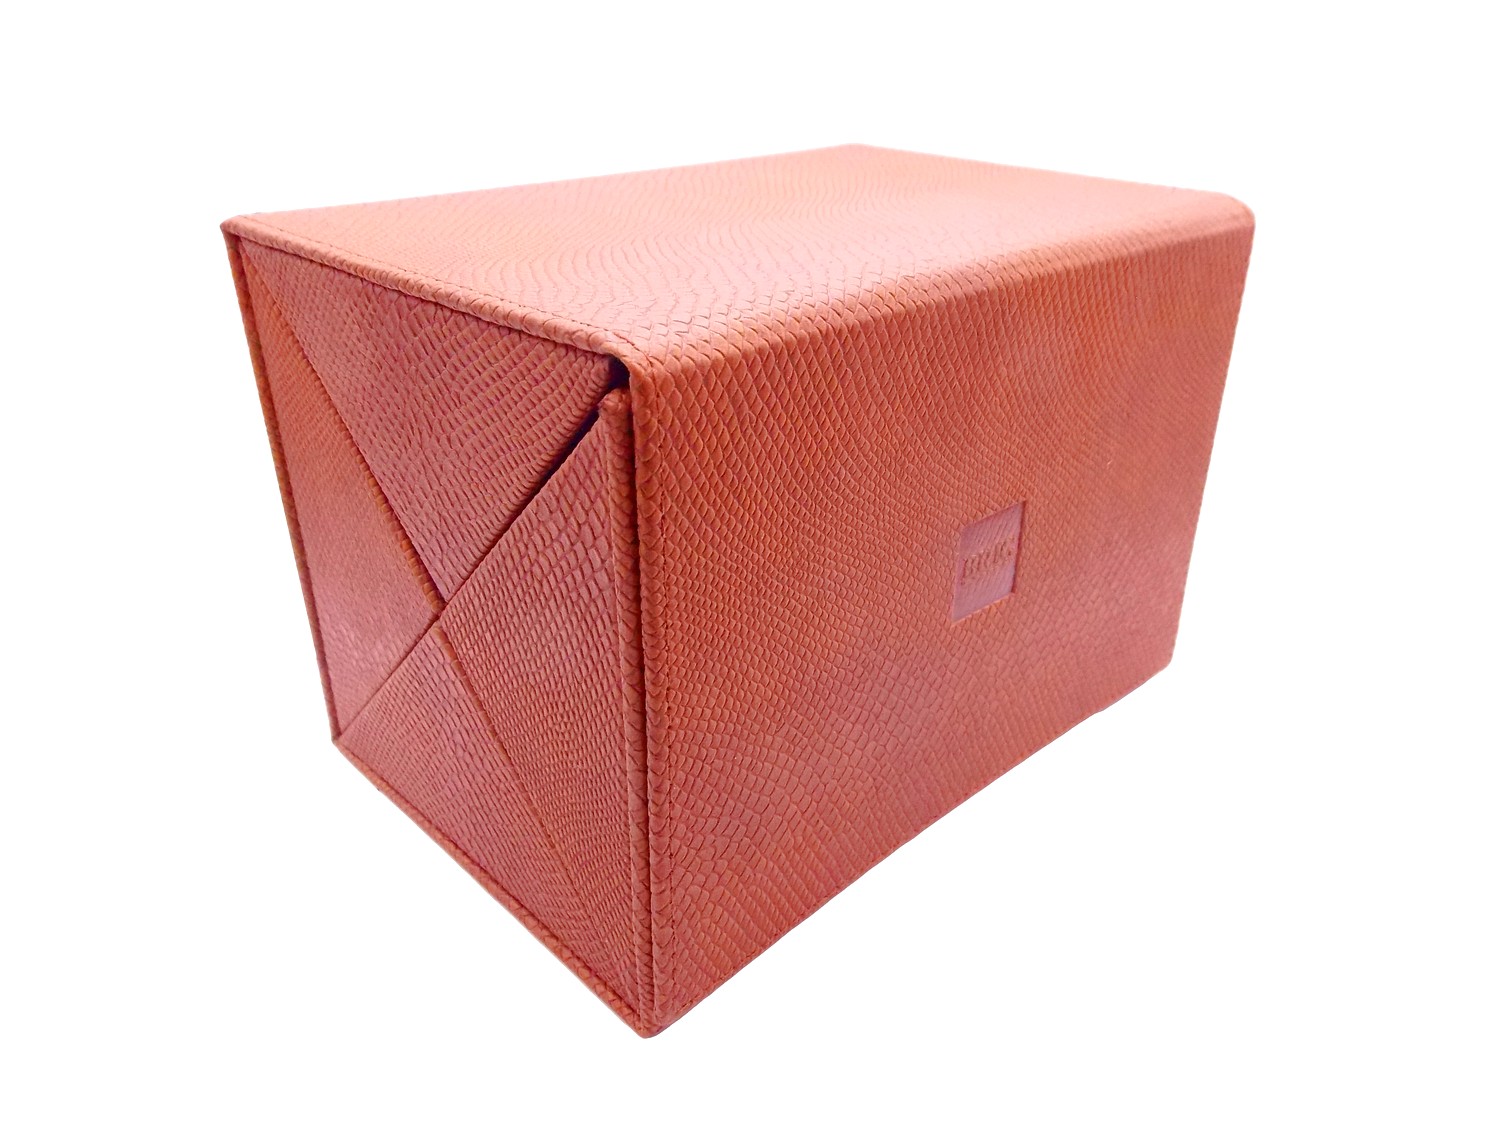 Мультифутляр BOX 4.110.20.07 мульти-футляр коричневый